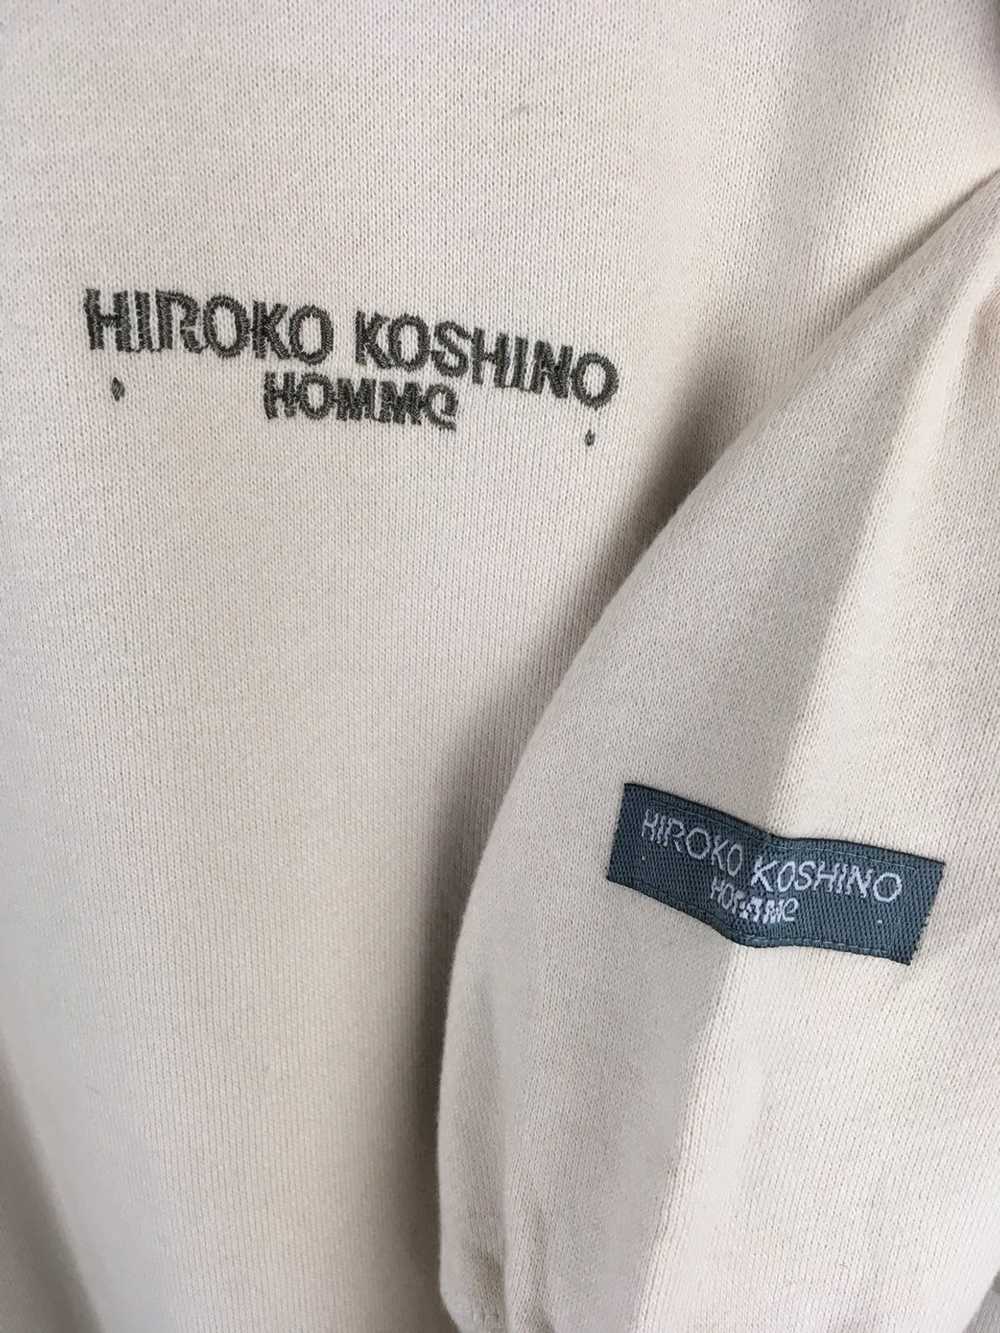 Designer × Japanese Brand Vintage Hiroko Koshino … - image 3